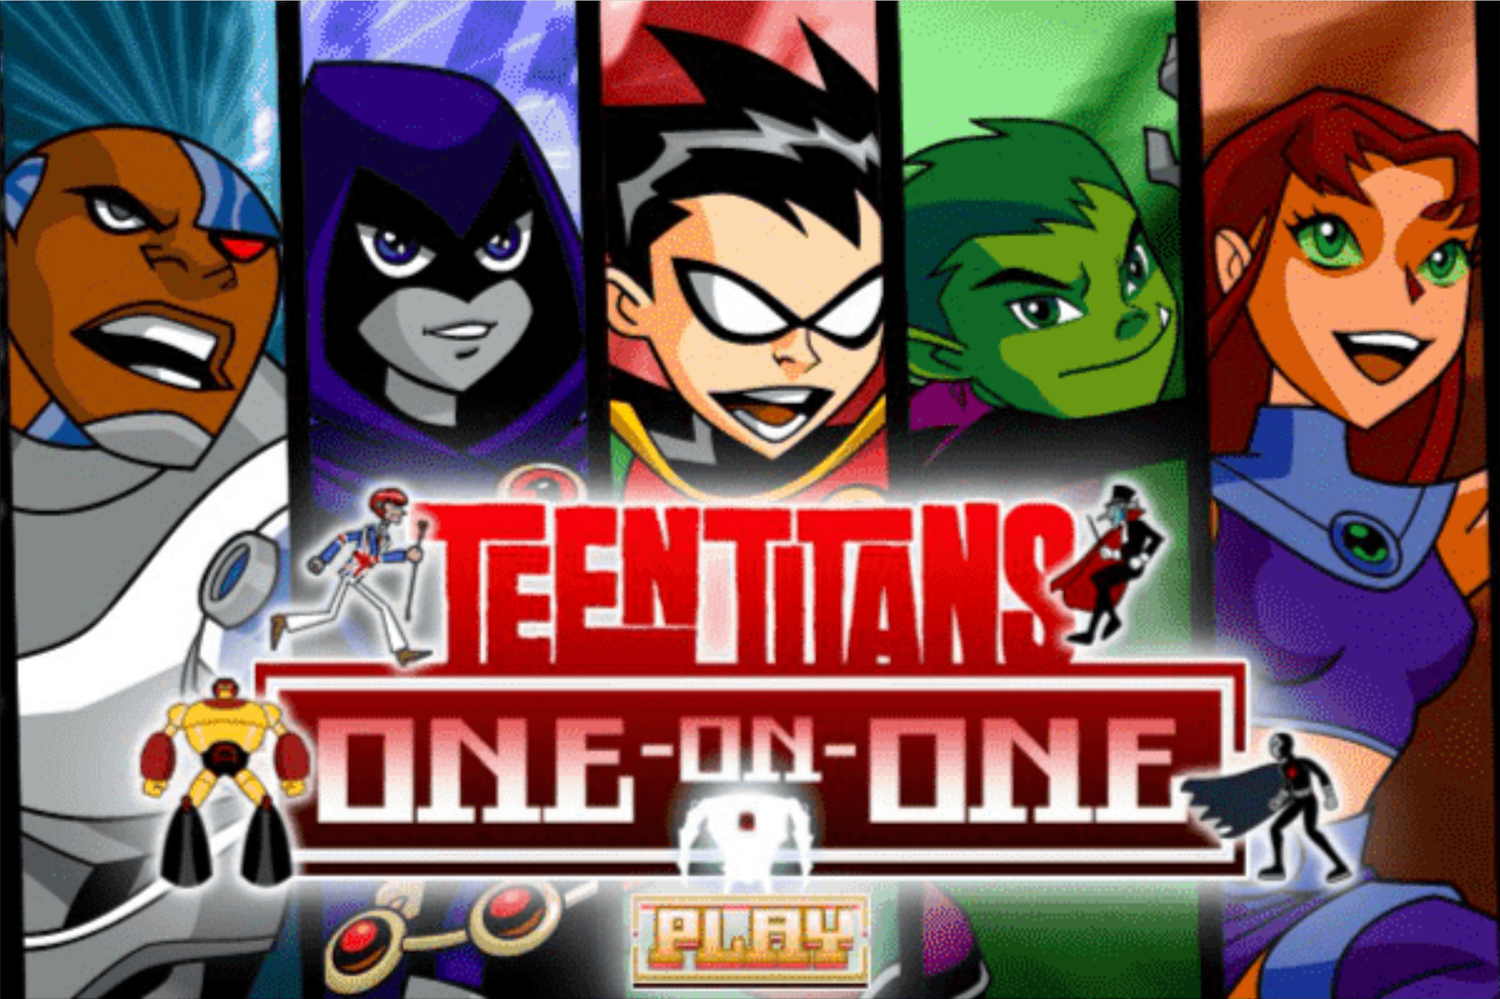 Teen Titans Go One on One Game Welcome Screen Screenshot.